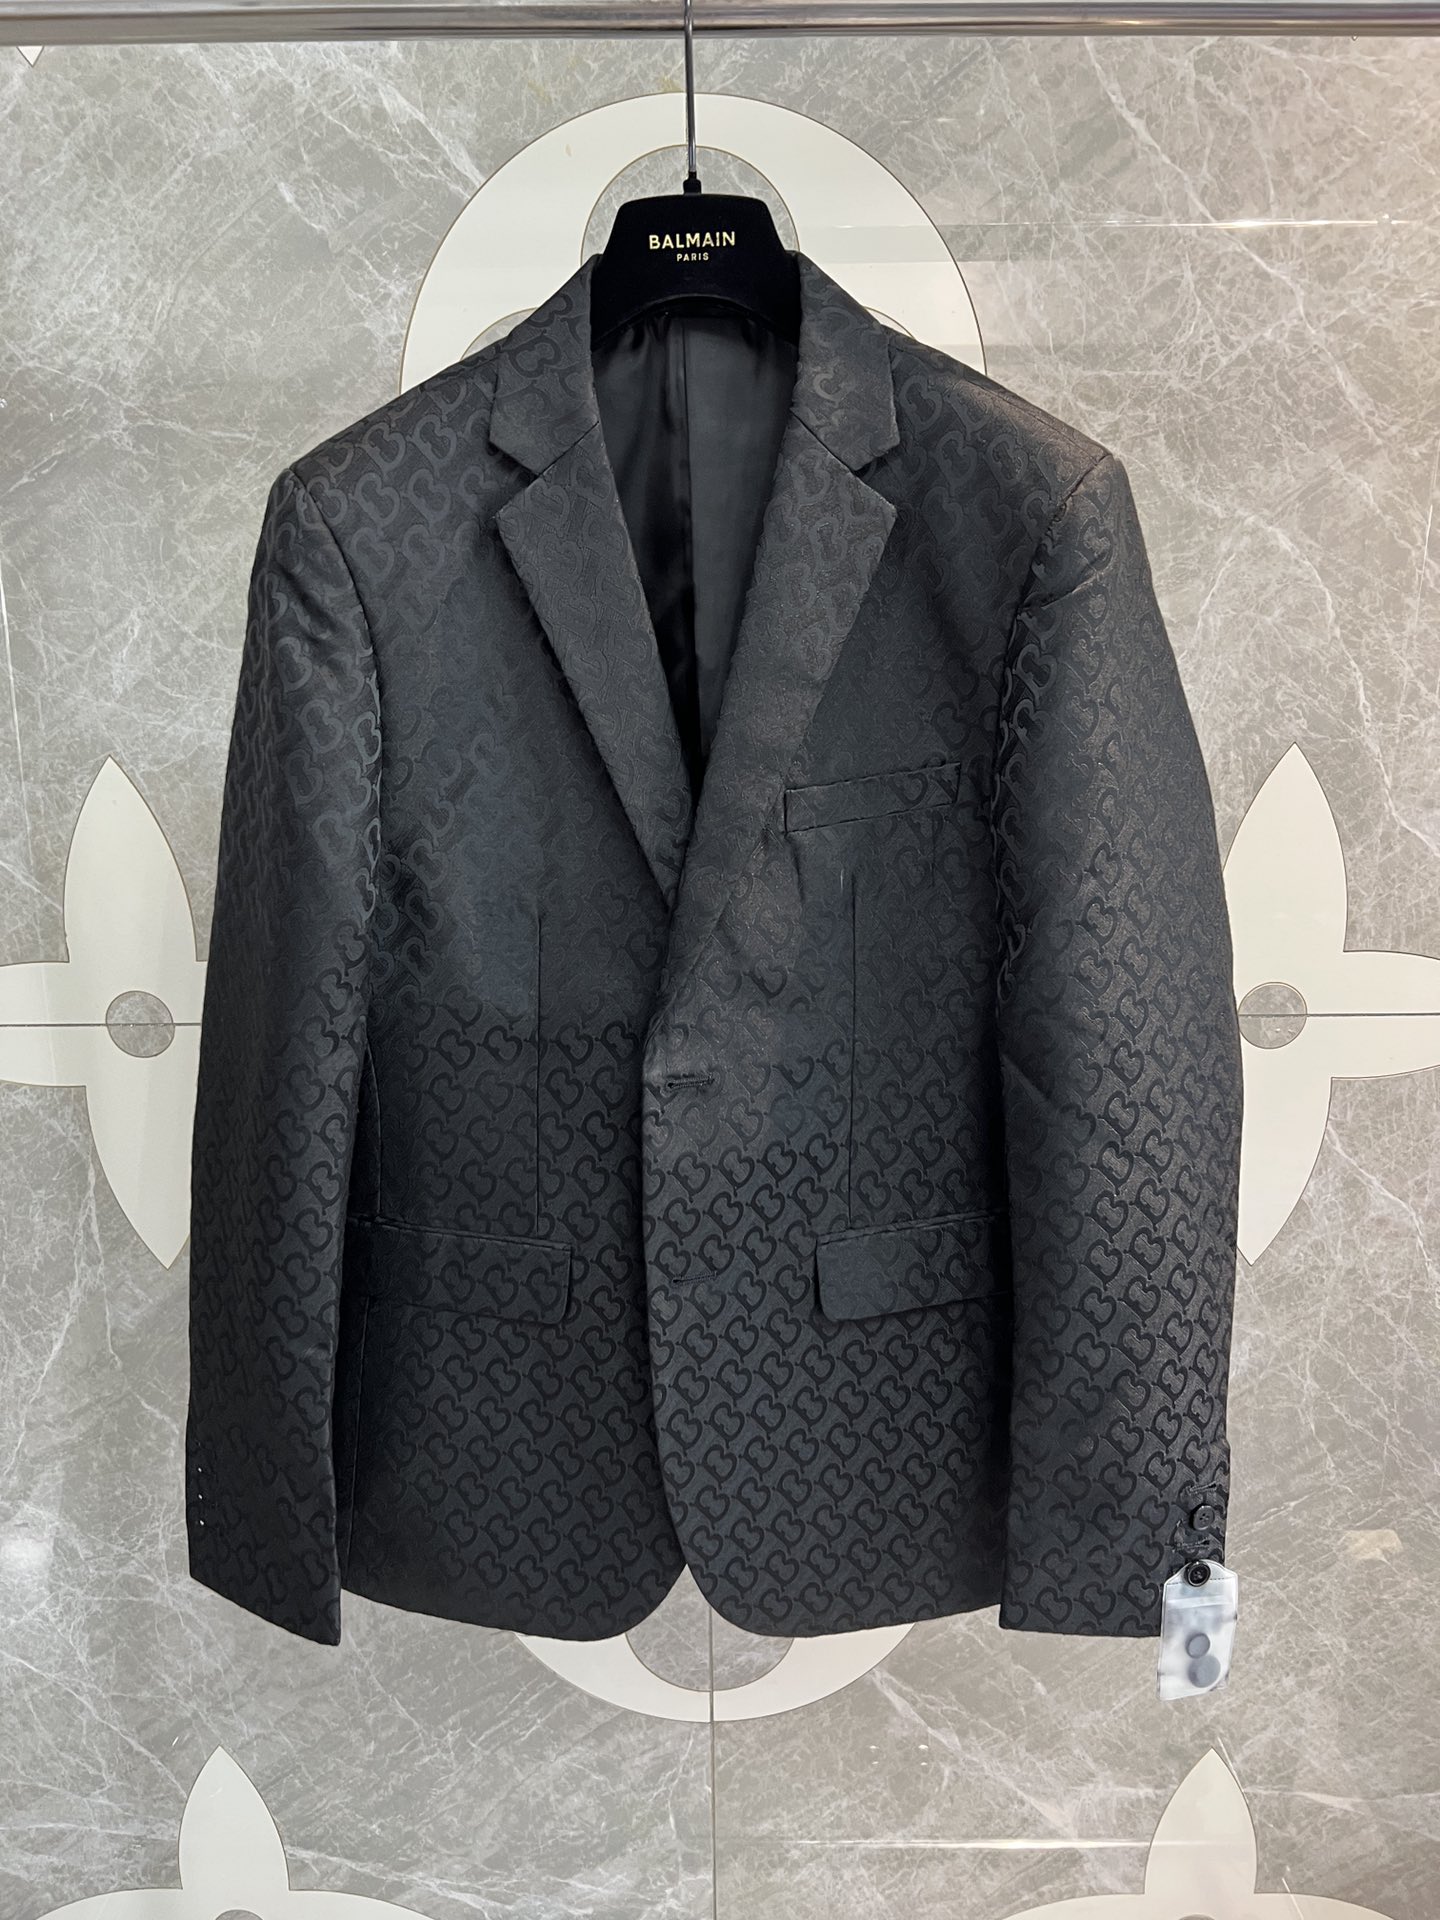 Gucci Business Suit